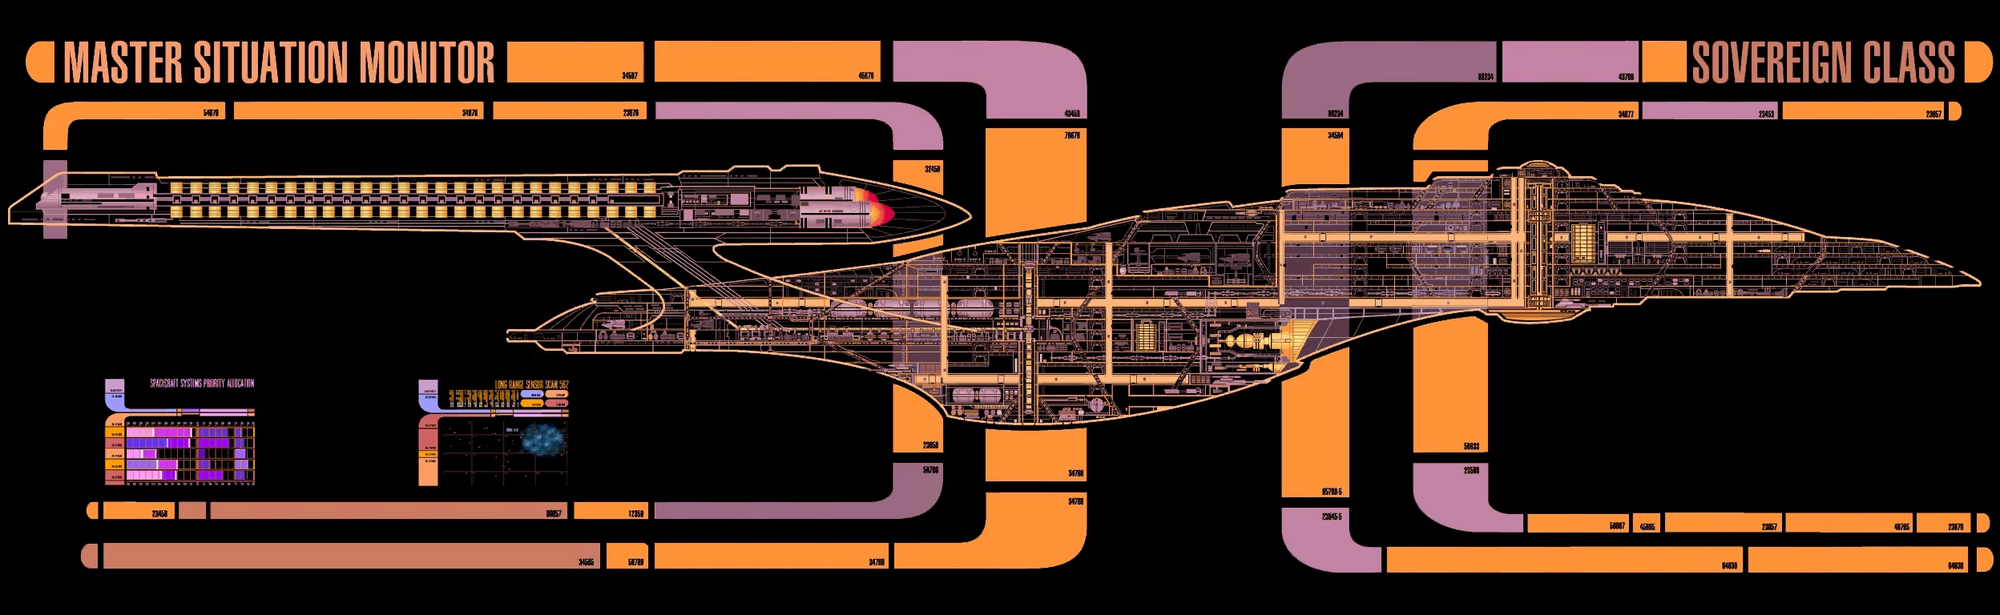 Category:Federation starship classes | Memory Delta Wiki | Fandom